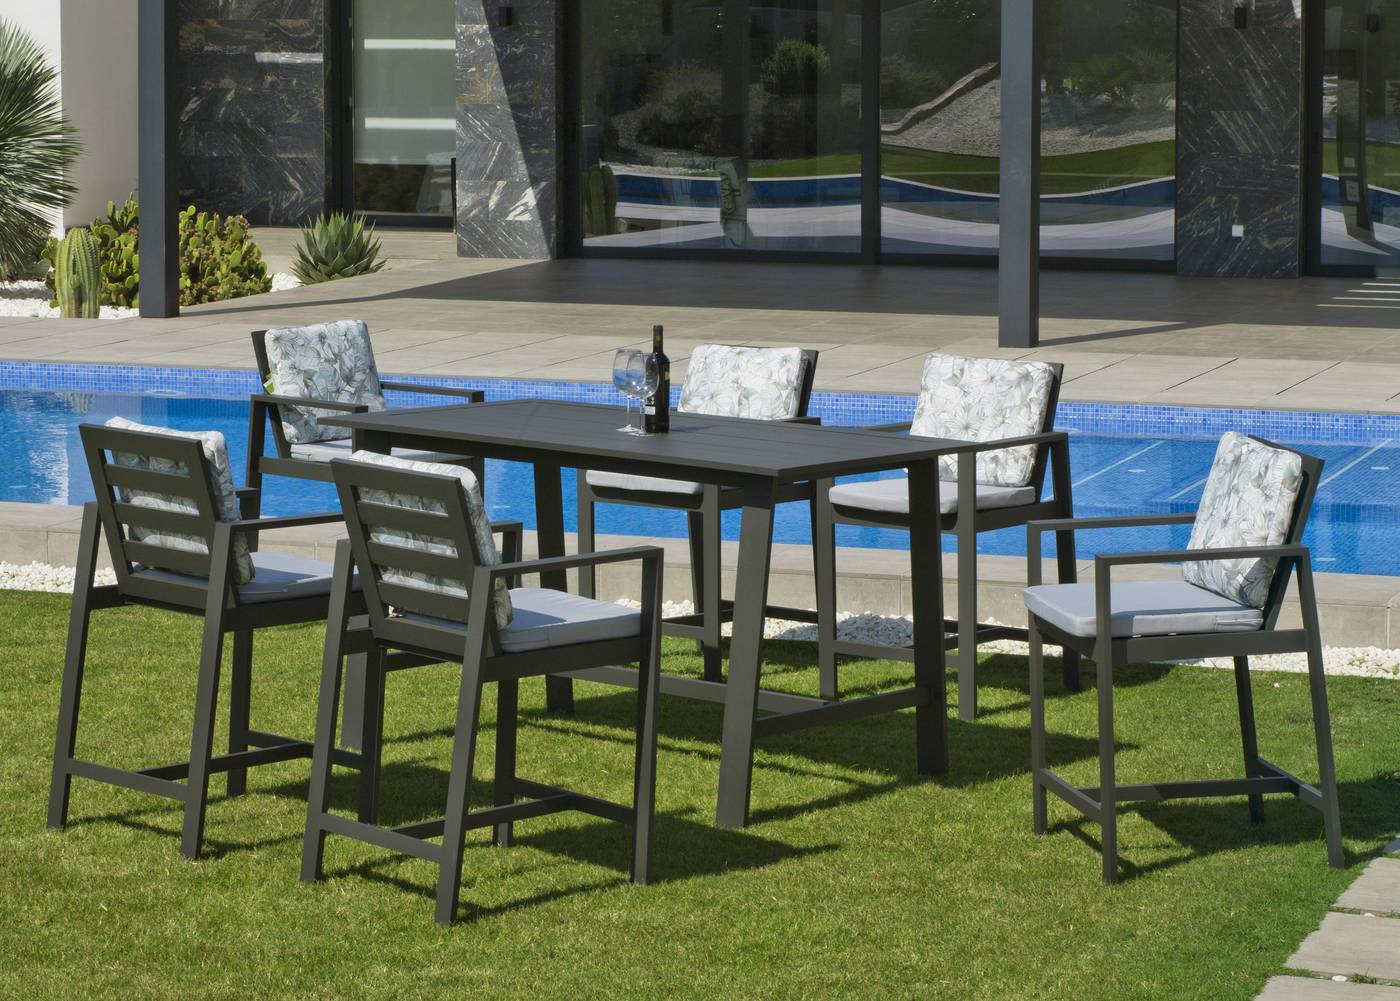 Sillón Coctel Aluminio Luxe Marlet - Lujoso sillón alto de coctel, para jardín o terraza. Disponible en color blanco, antracita y champagne.